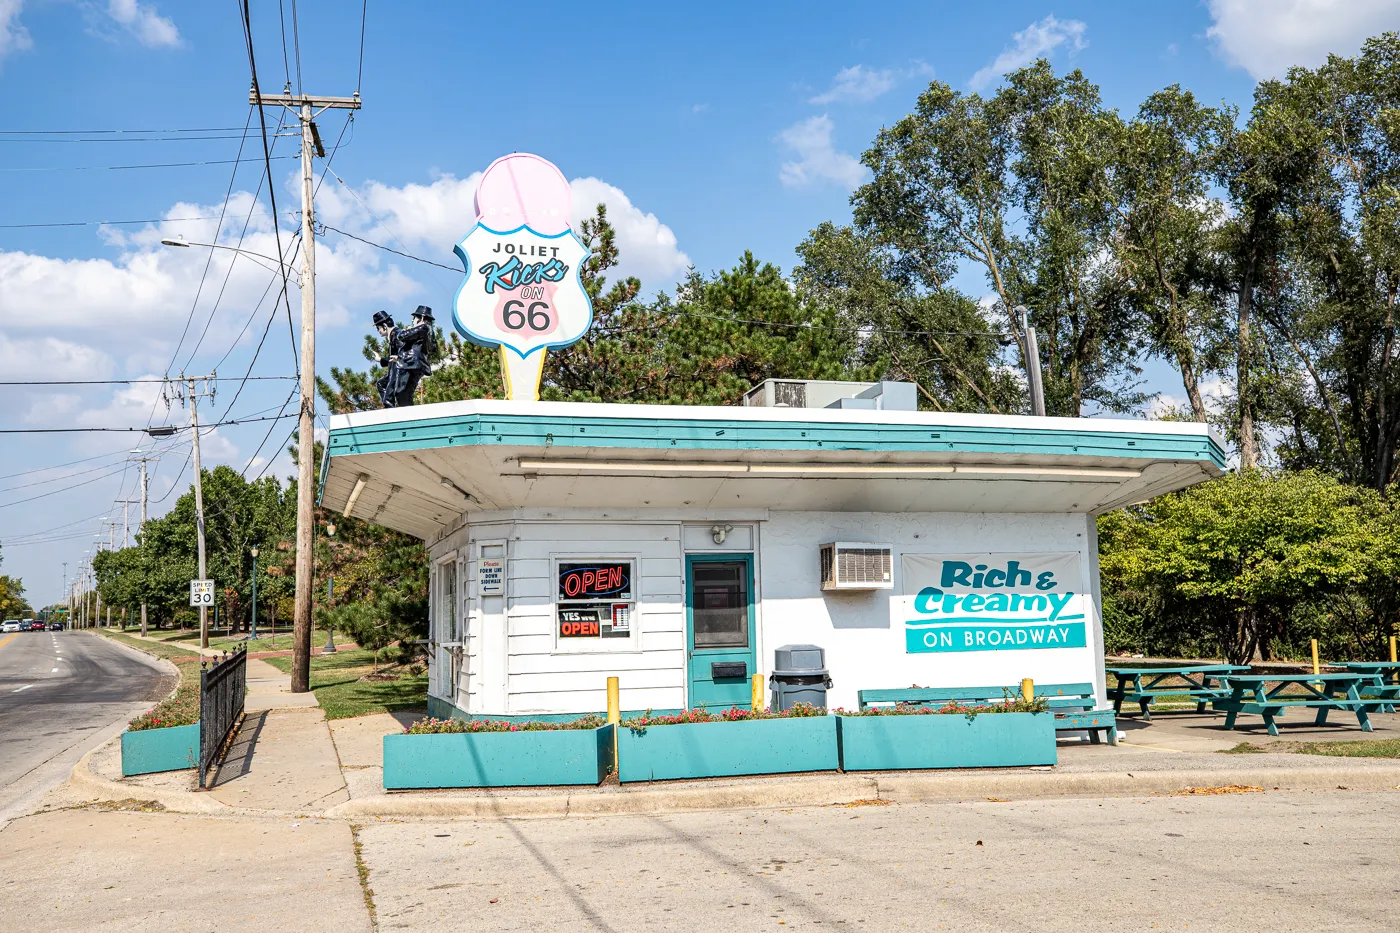 Rich & Creamy in Joliet, Illinois - Route 66 Ice Cream Shop